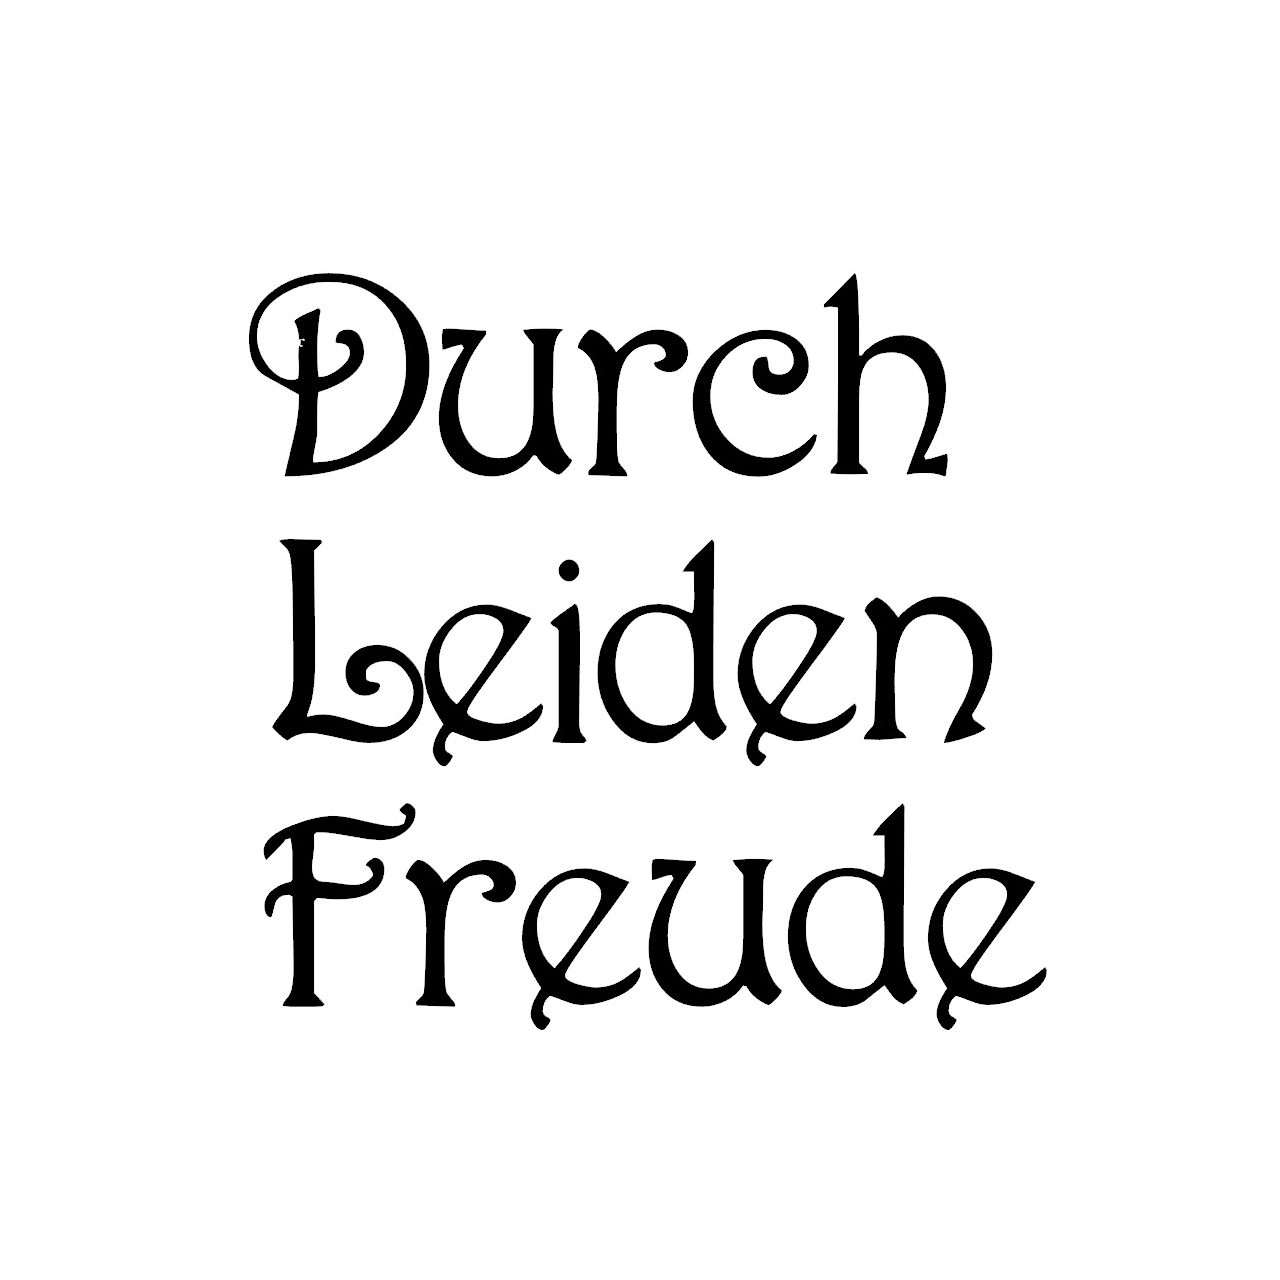 ウォールステッカー 名言 黒 マット ベートーベン ドイツ語 Durch Leiden Freude Iby アイバイ ウォールステッカー 通販